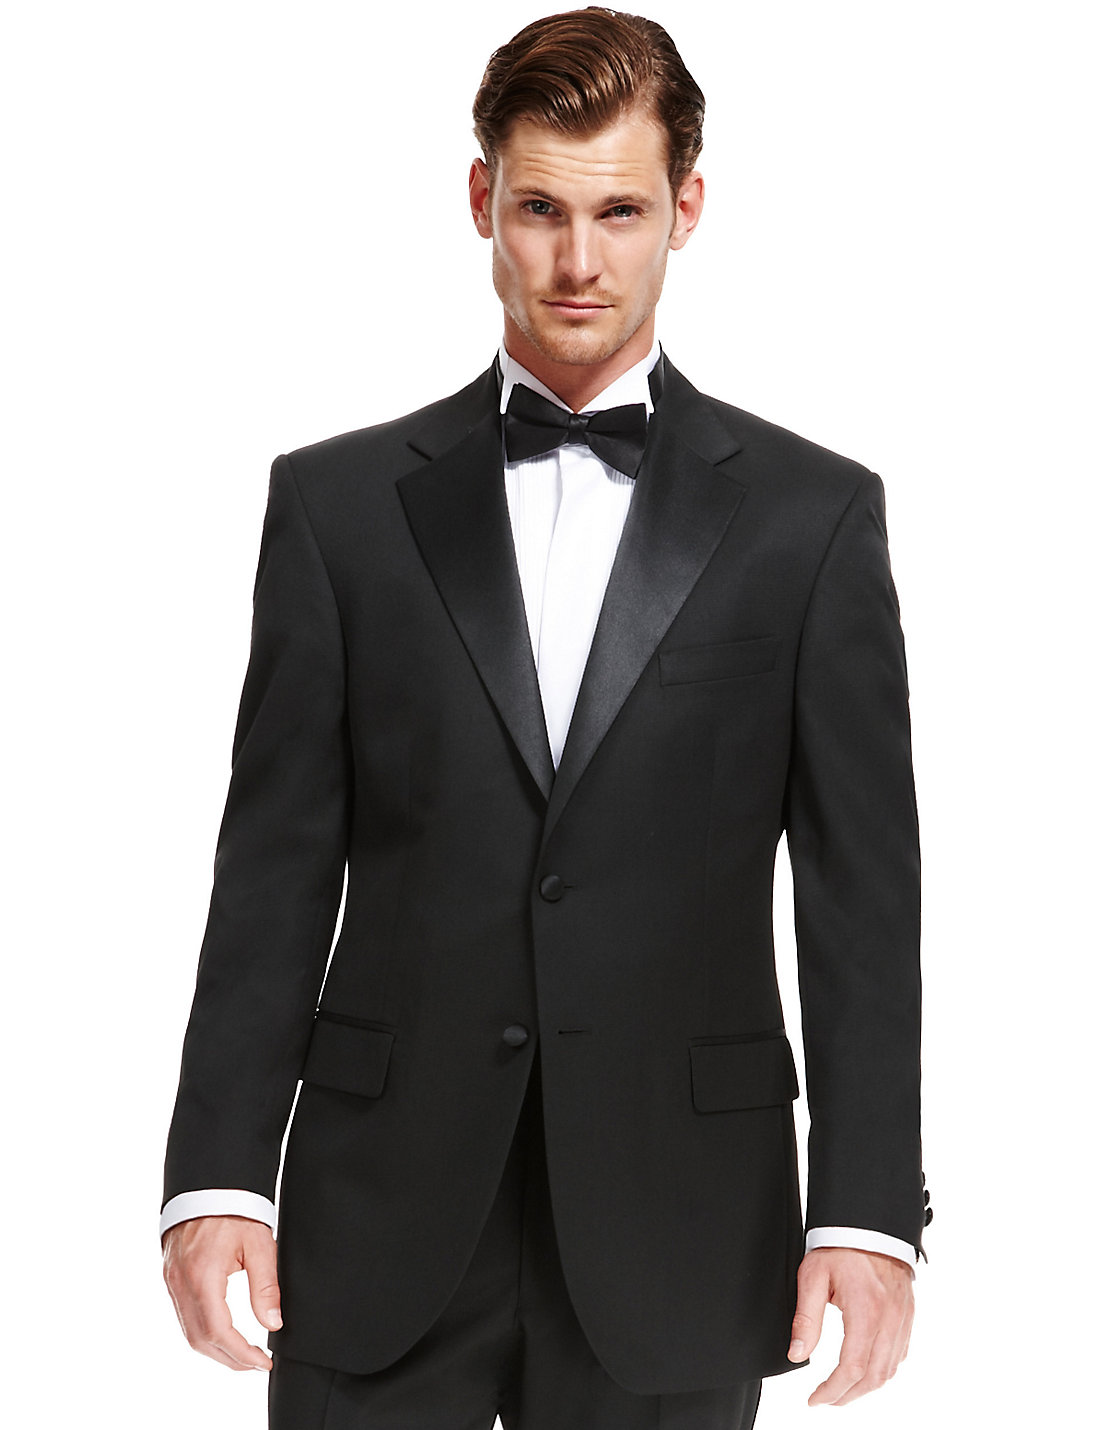 M&S COLLECTION Black Regular Fit Dinner Suit £44.50 Delivered. - HotUKDeals